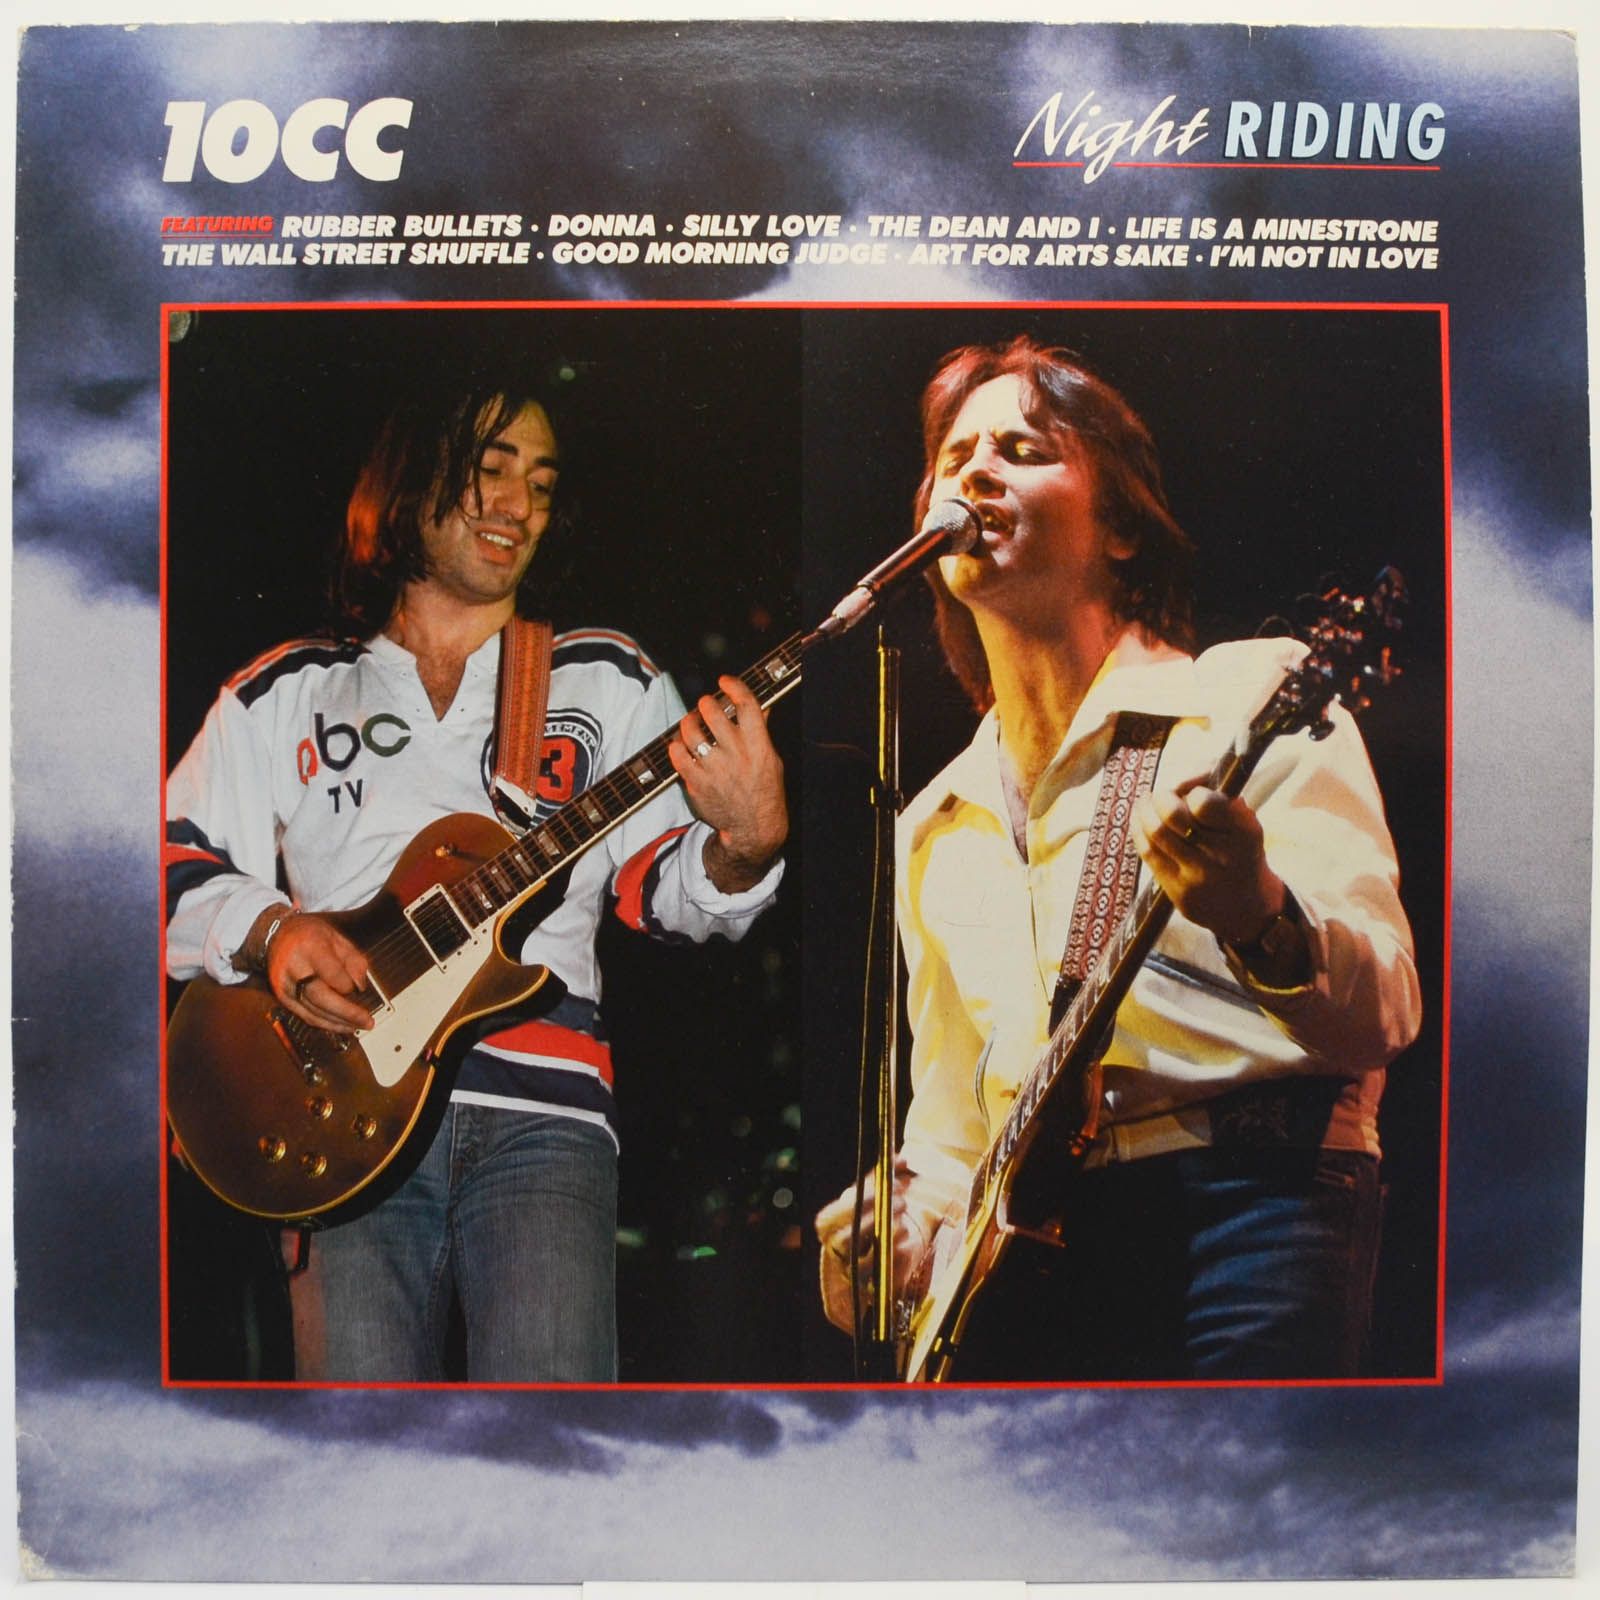 10cc — Night Riding (UK), 1988